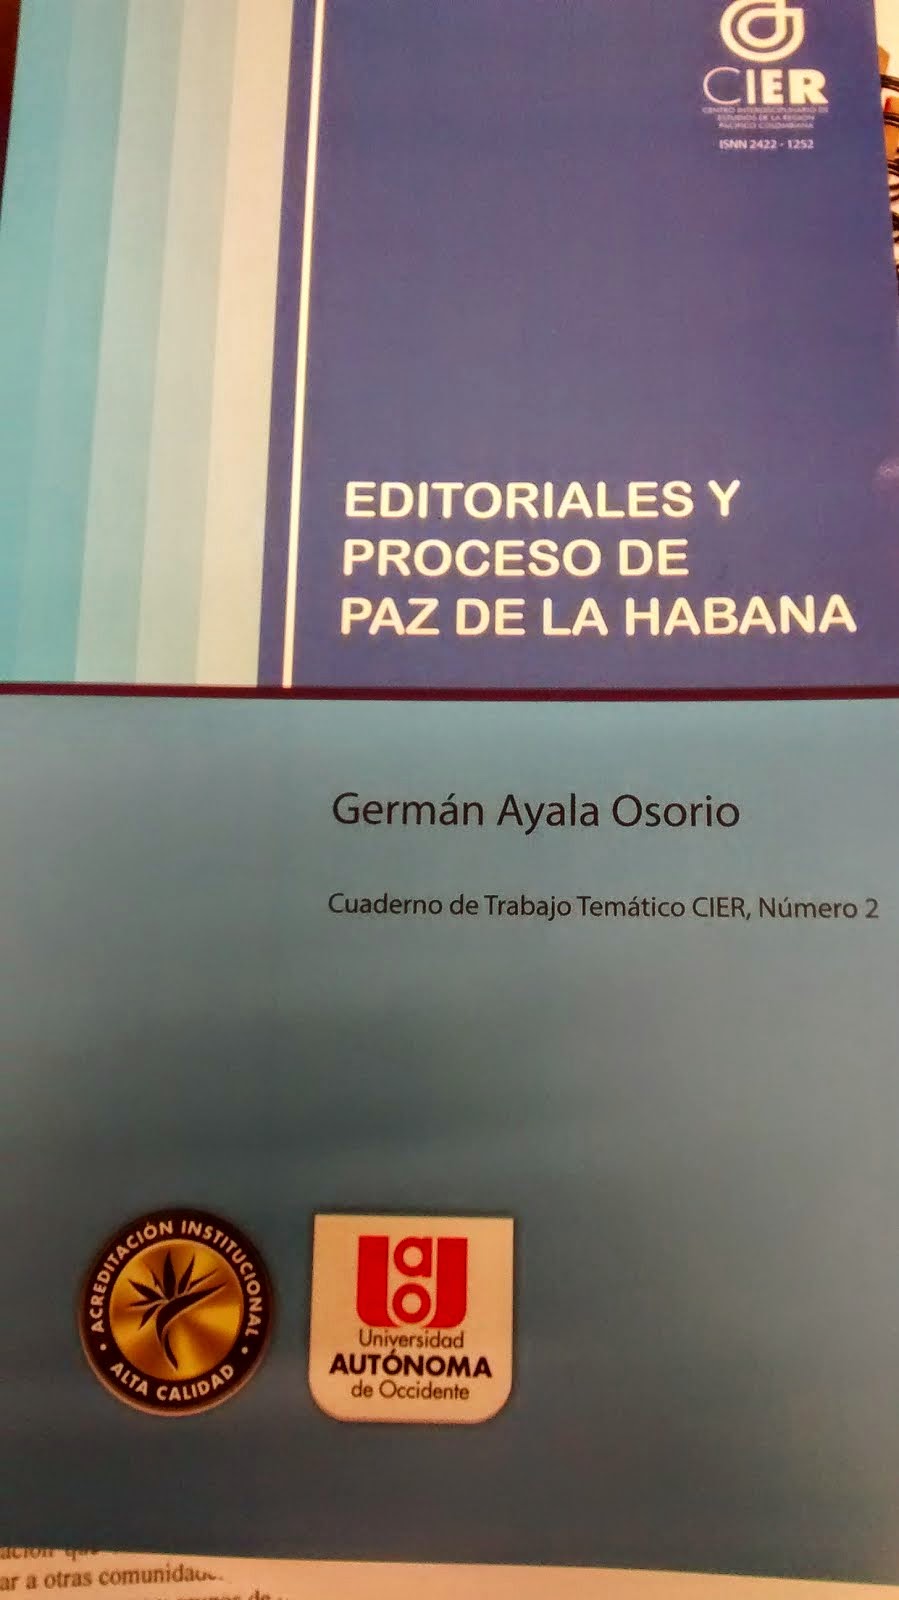 SEGUNDO CUADERNO TEMÁTICO, EDITORIALES Y PROCESO DE PAZ